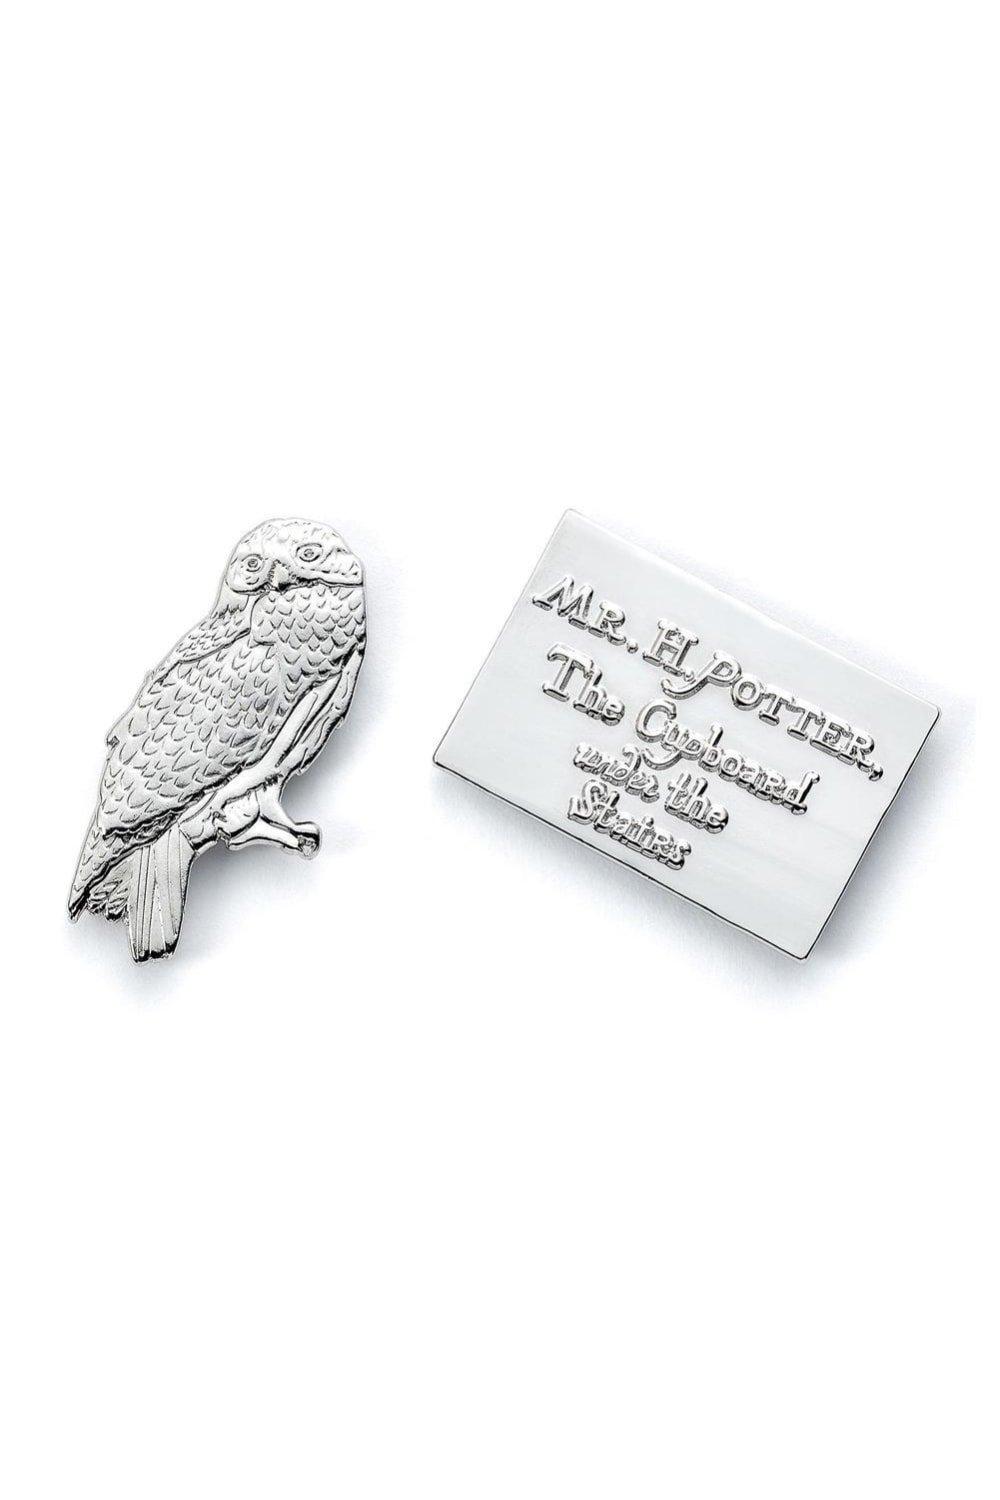 Letter Hedwig Badge Set (Pack of 2)